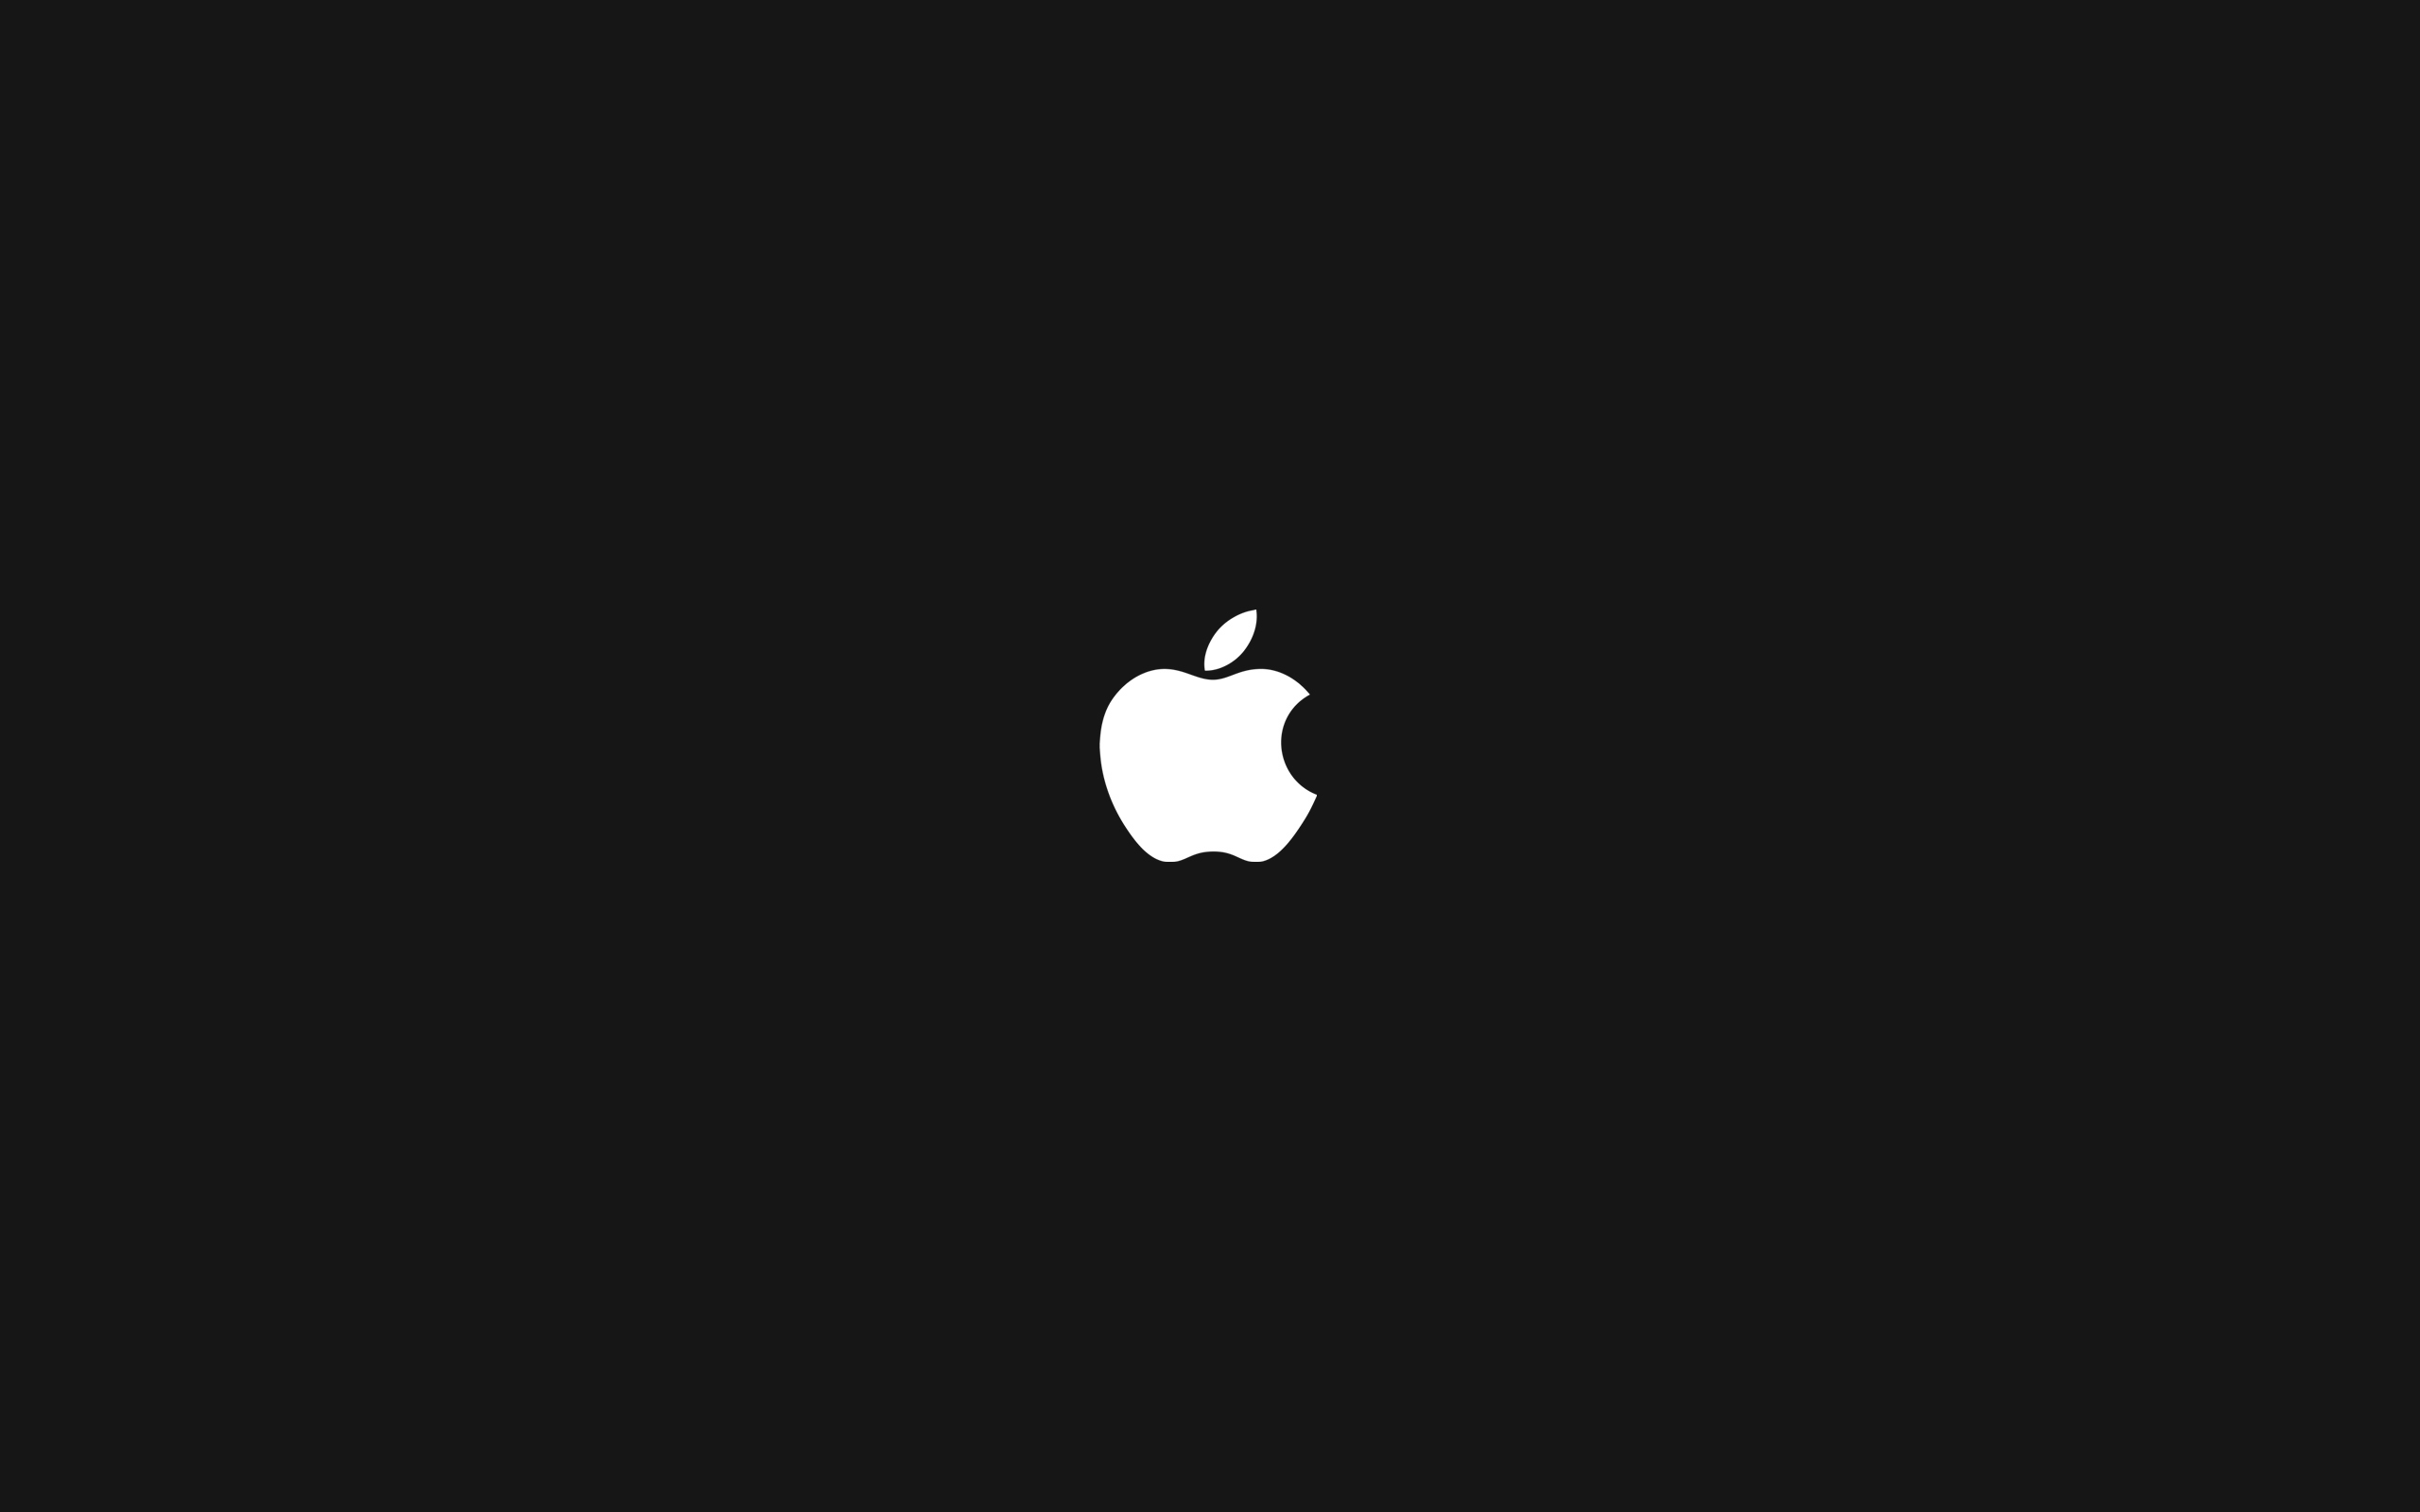 минималистичный, Эппл (Apple), технология, логотипы - обои на рабочий стол